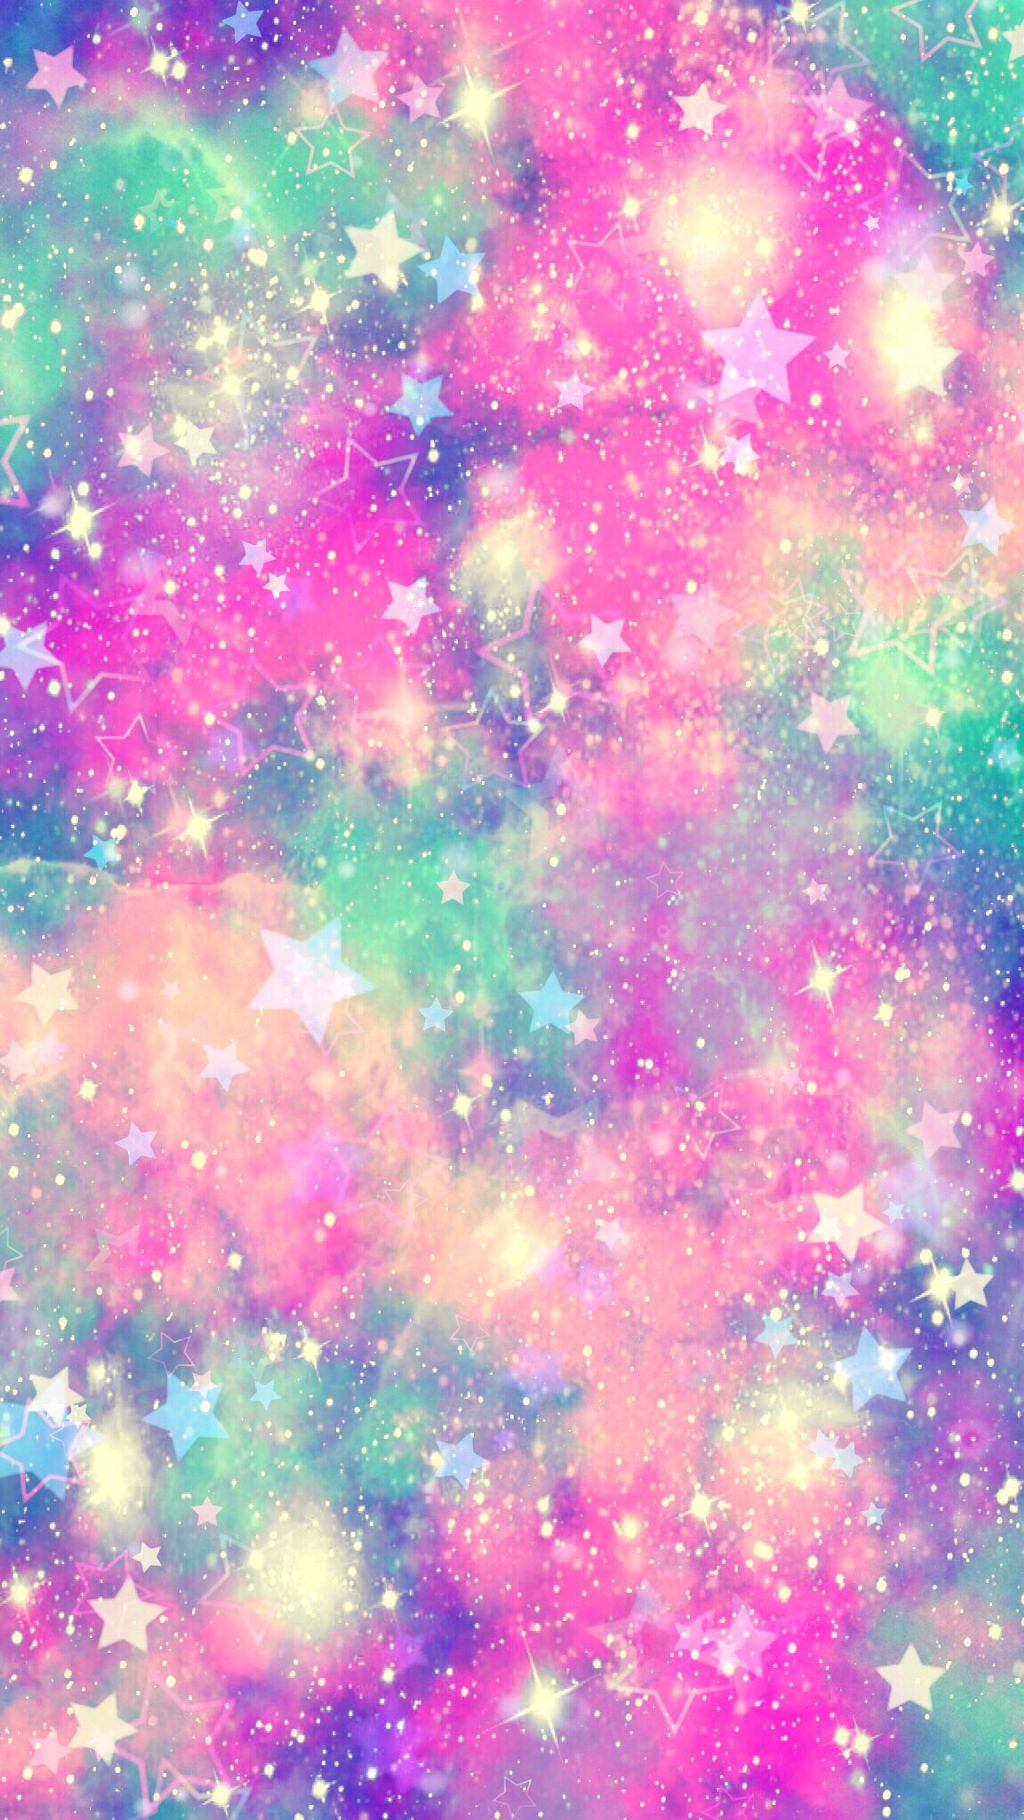 galaxy glitter wallpaper,nebula,green,pink,purple,pattern